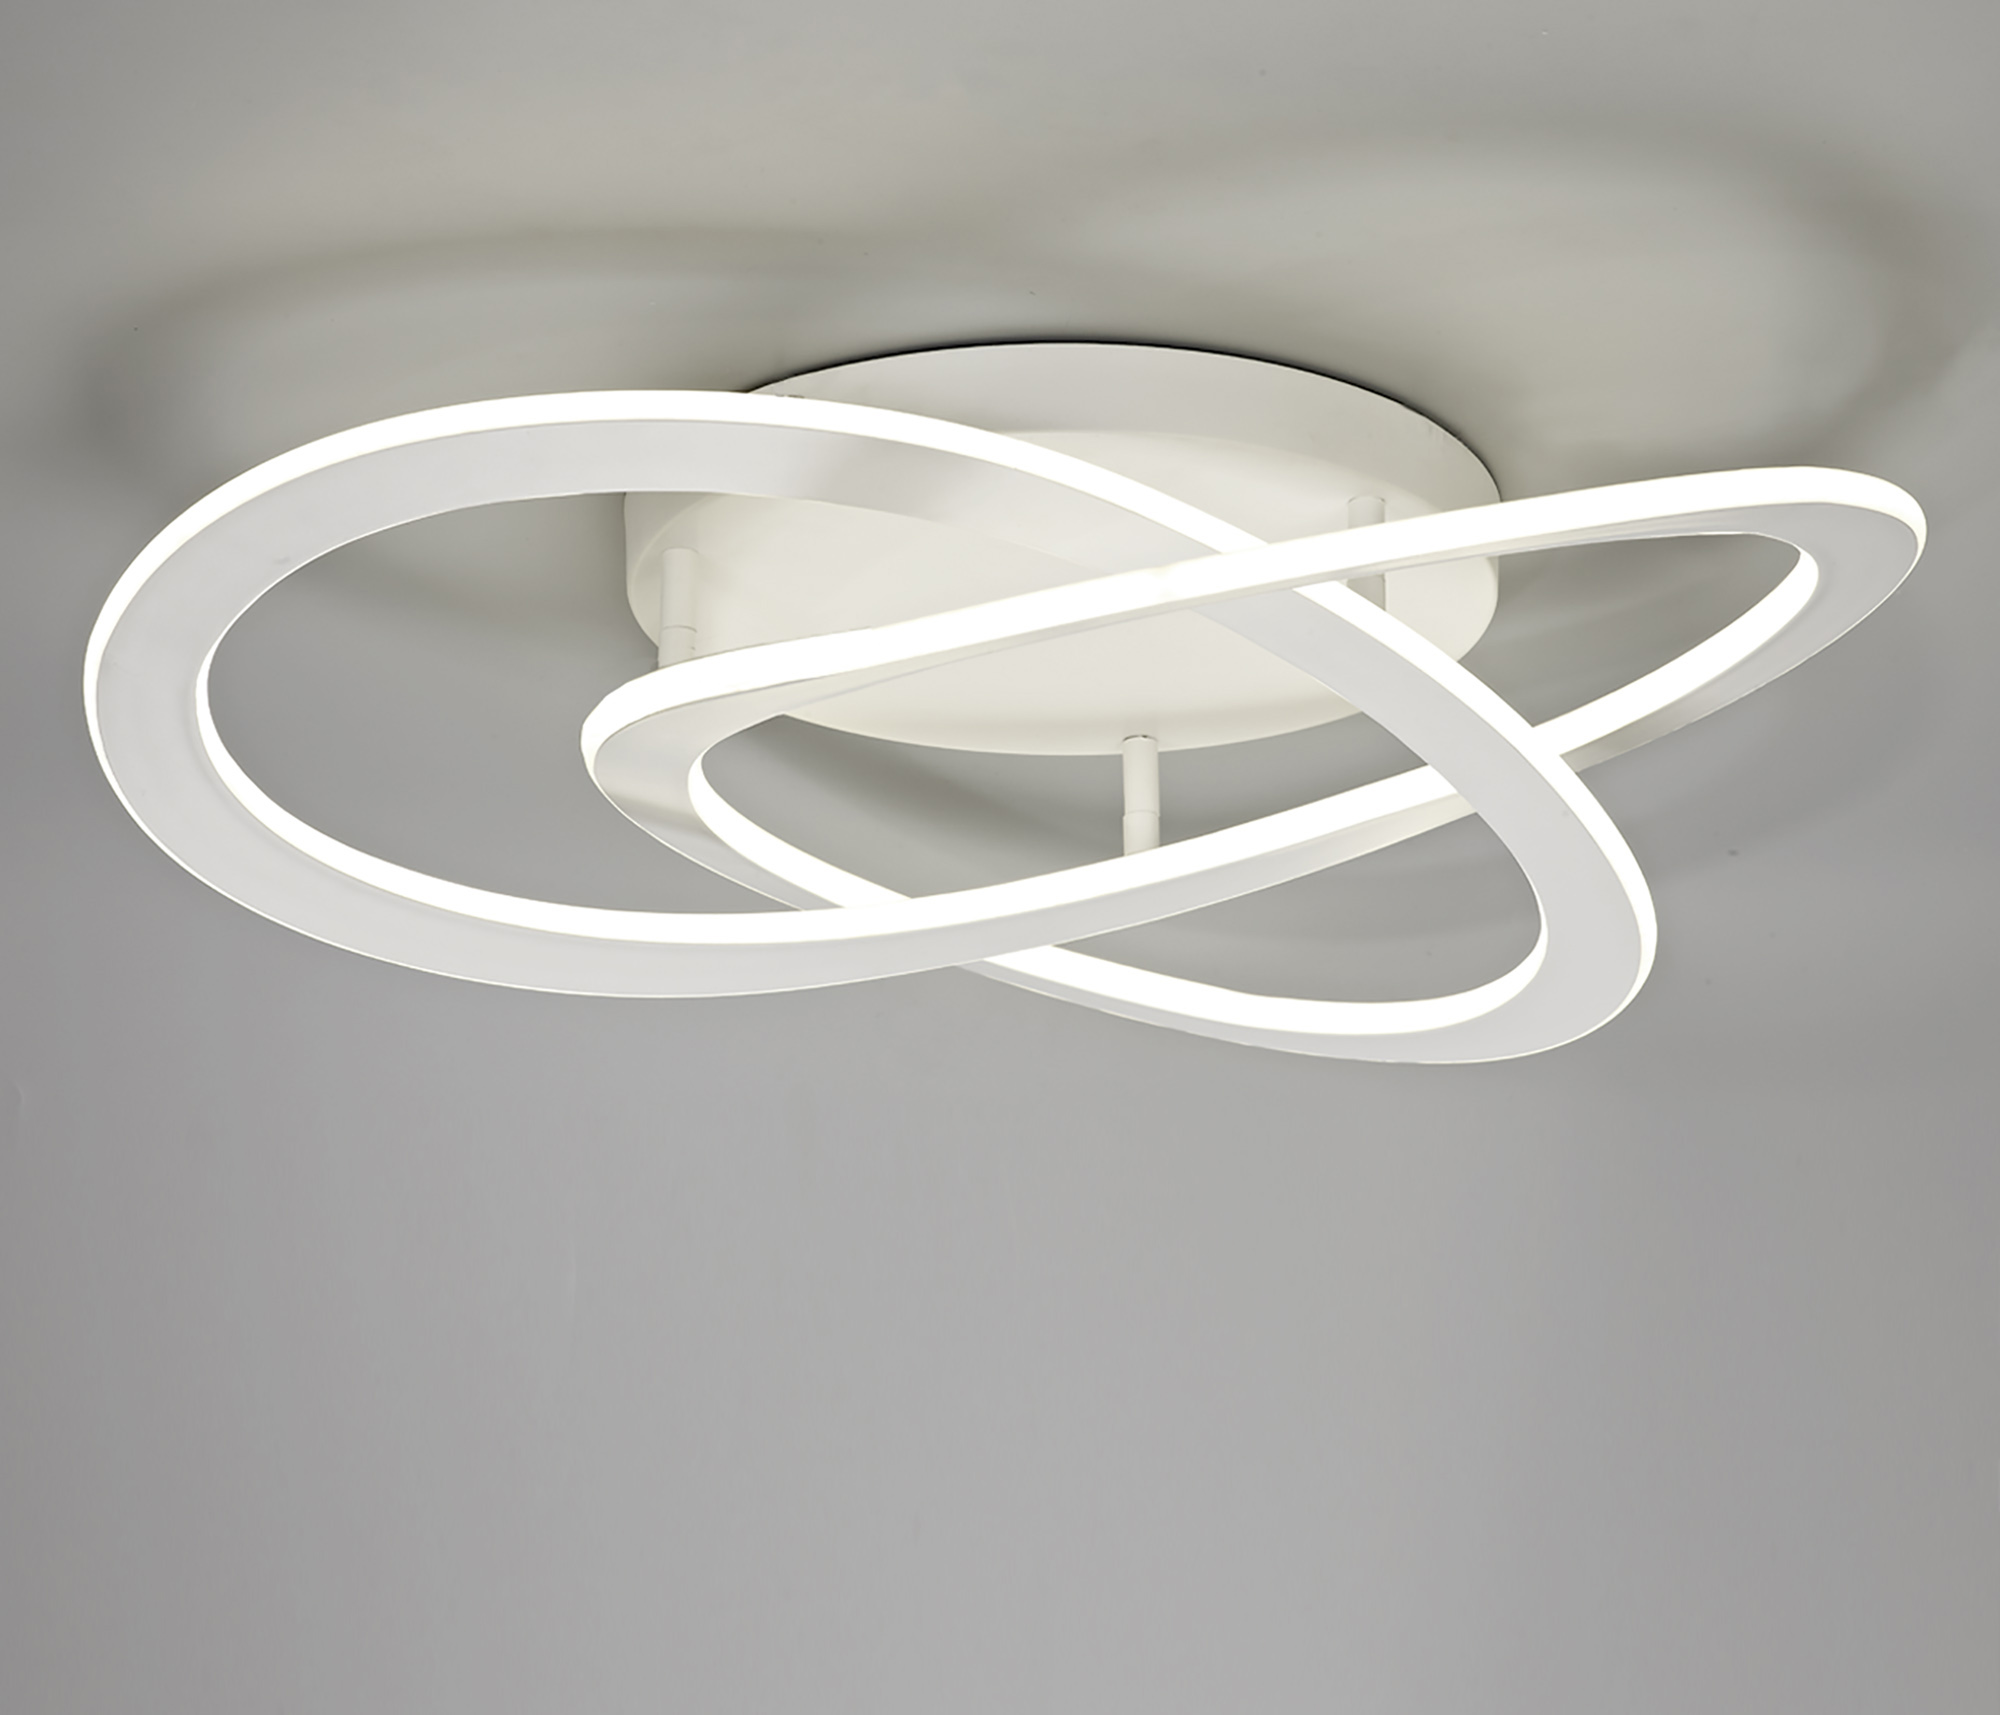 LED Ceiling Light | White Large Ceiling Light